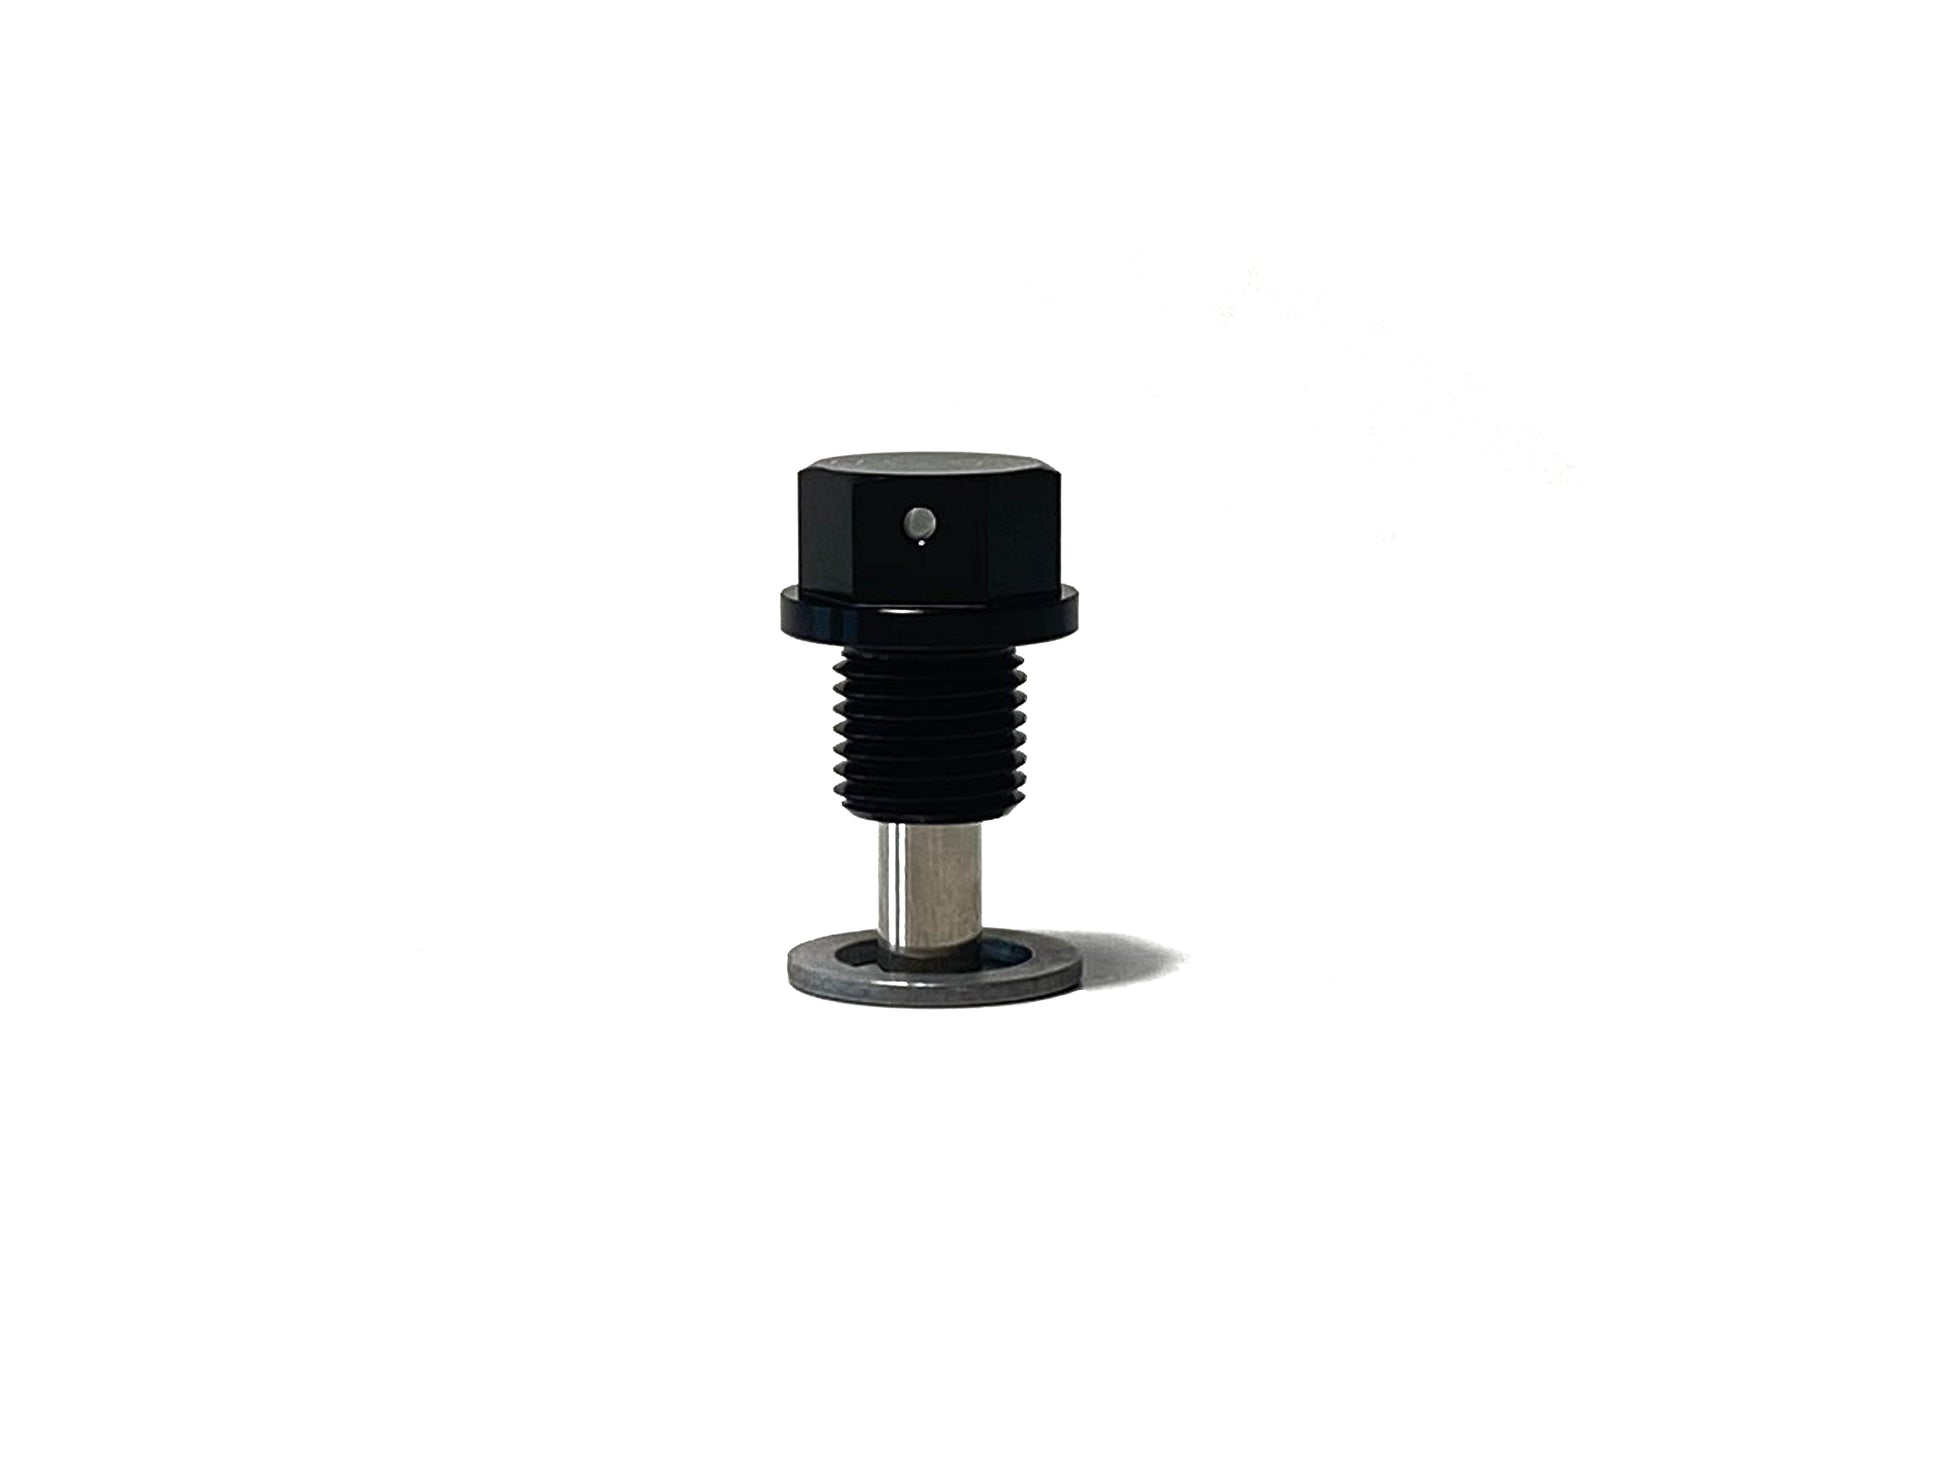 Masata VAG Magnetic Oil Sump Drain Plug - M14x1.5